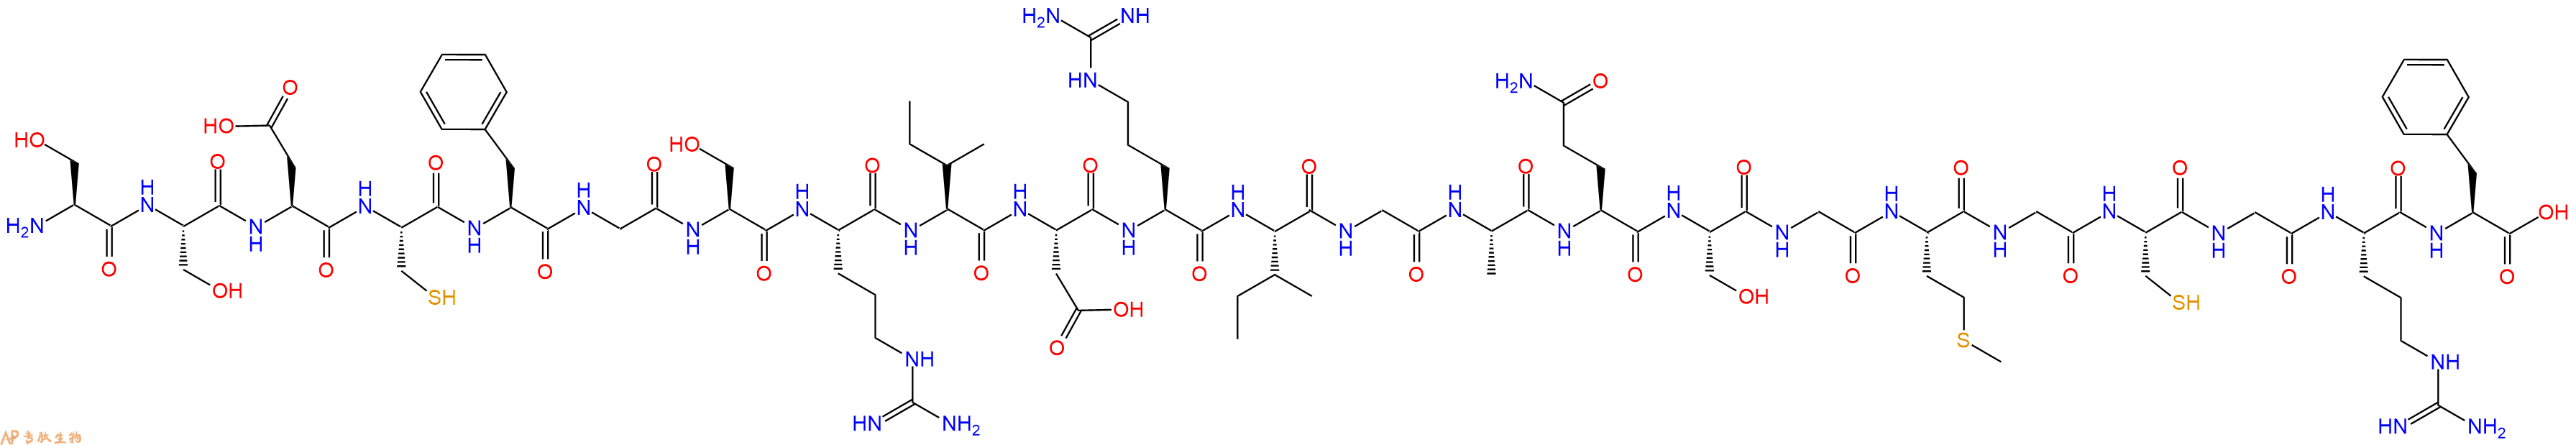 专肽生物产品ANP(8-30), frog